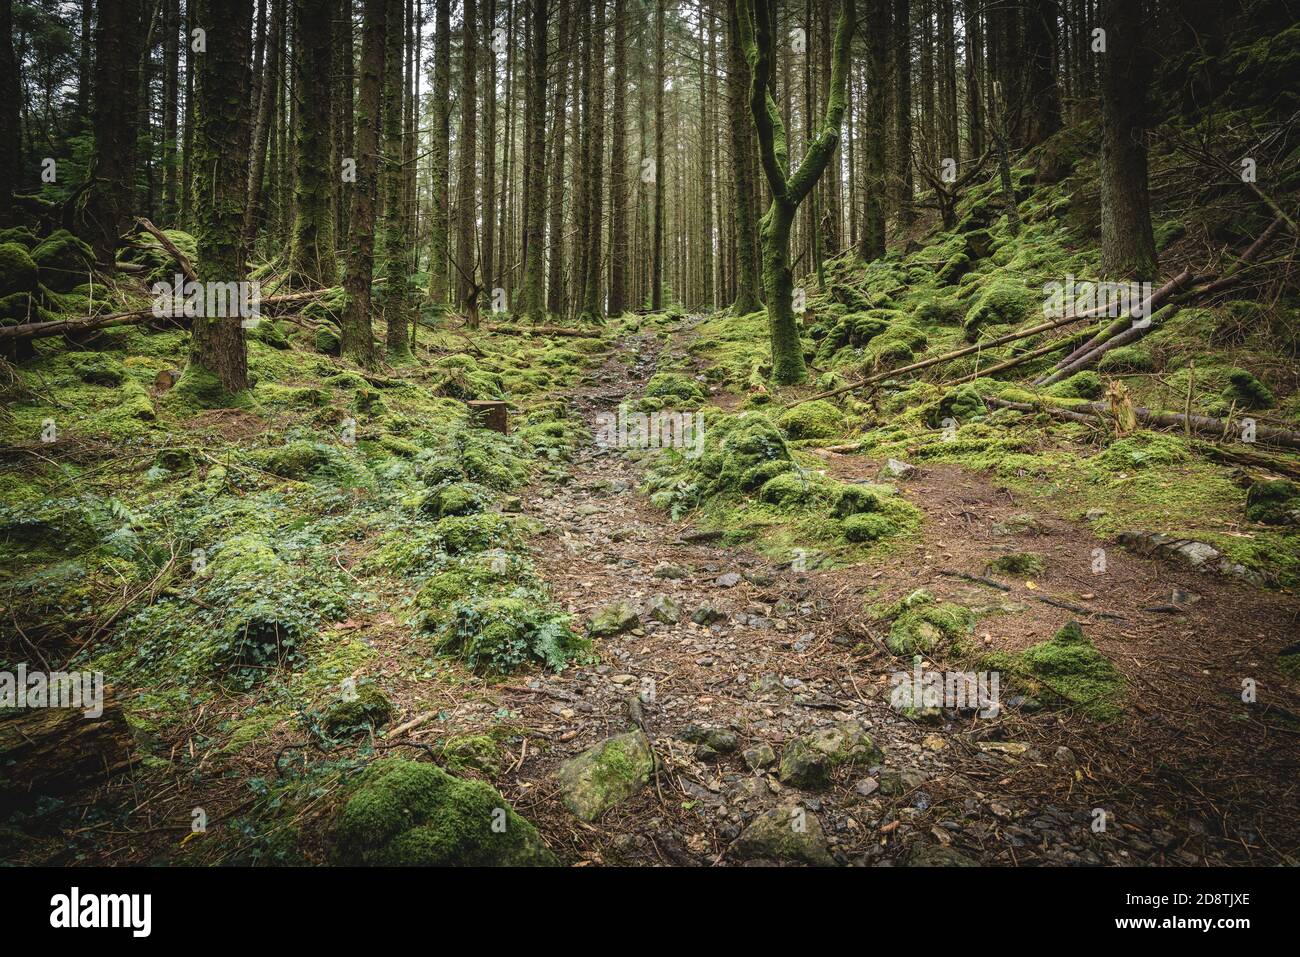 Moosbewachsene Felsen im Wald bei Betws-y-Coed. Gwydir Forest im Snowdonia National Park, Wales Stockfoto